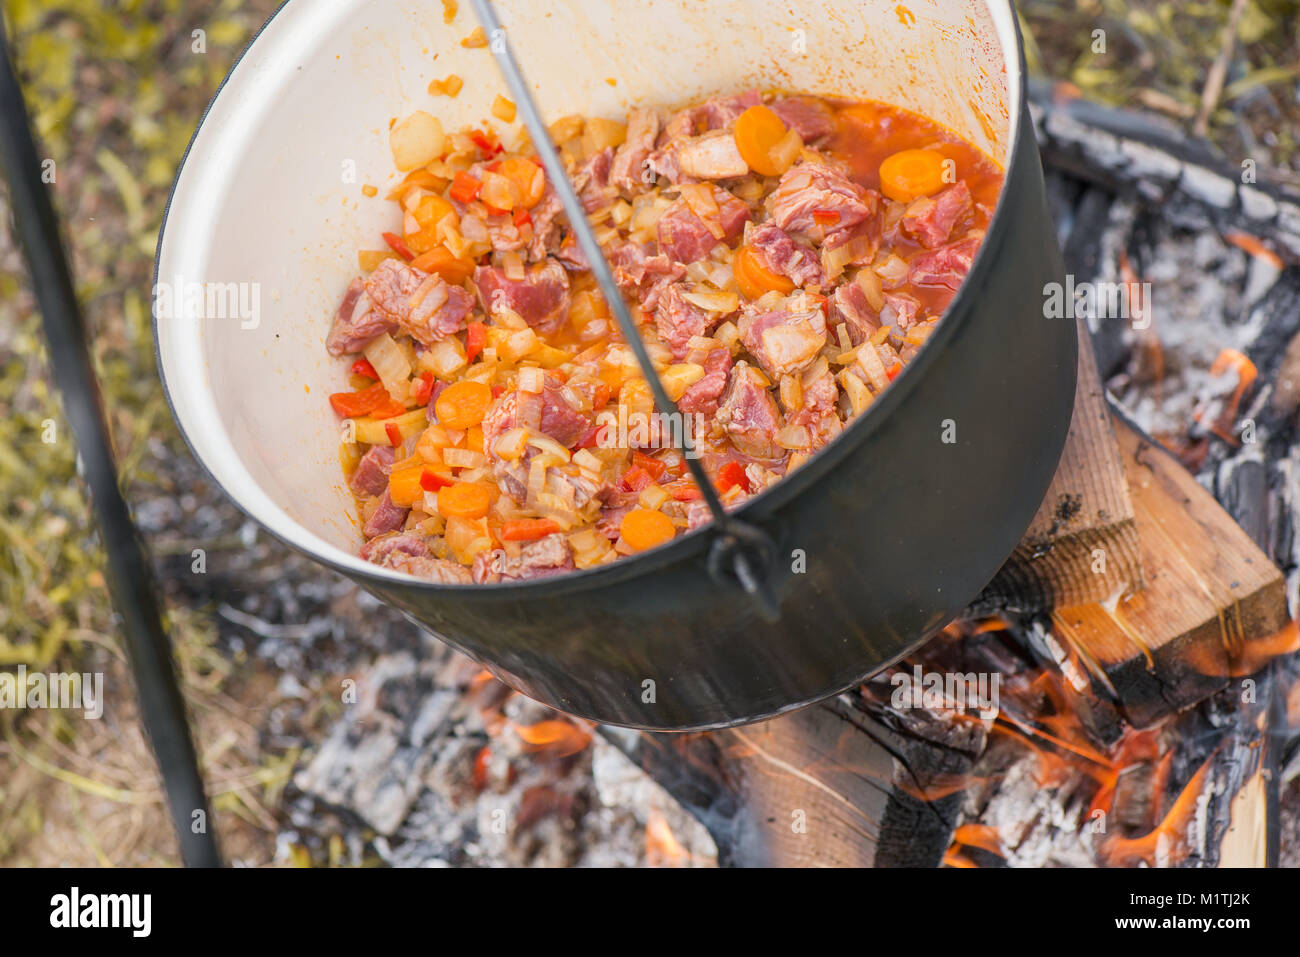 Kochen, heiße Gulaschsuppe mit Fleisch, Paprika, Kartoffeln, Zwiebeln,  Karotten, traditionelle Gerichte der ungarischen Küche. Fleisch Eintopf in  Römertopf zubereitet Stockfotografie - Alamy